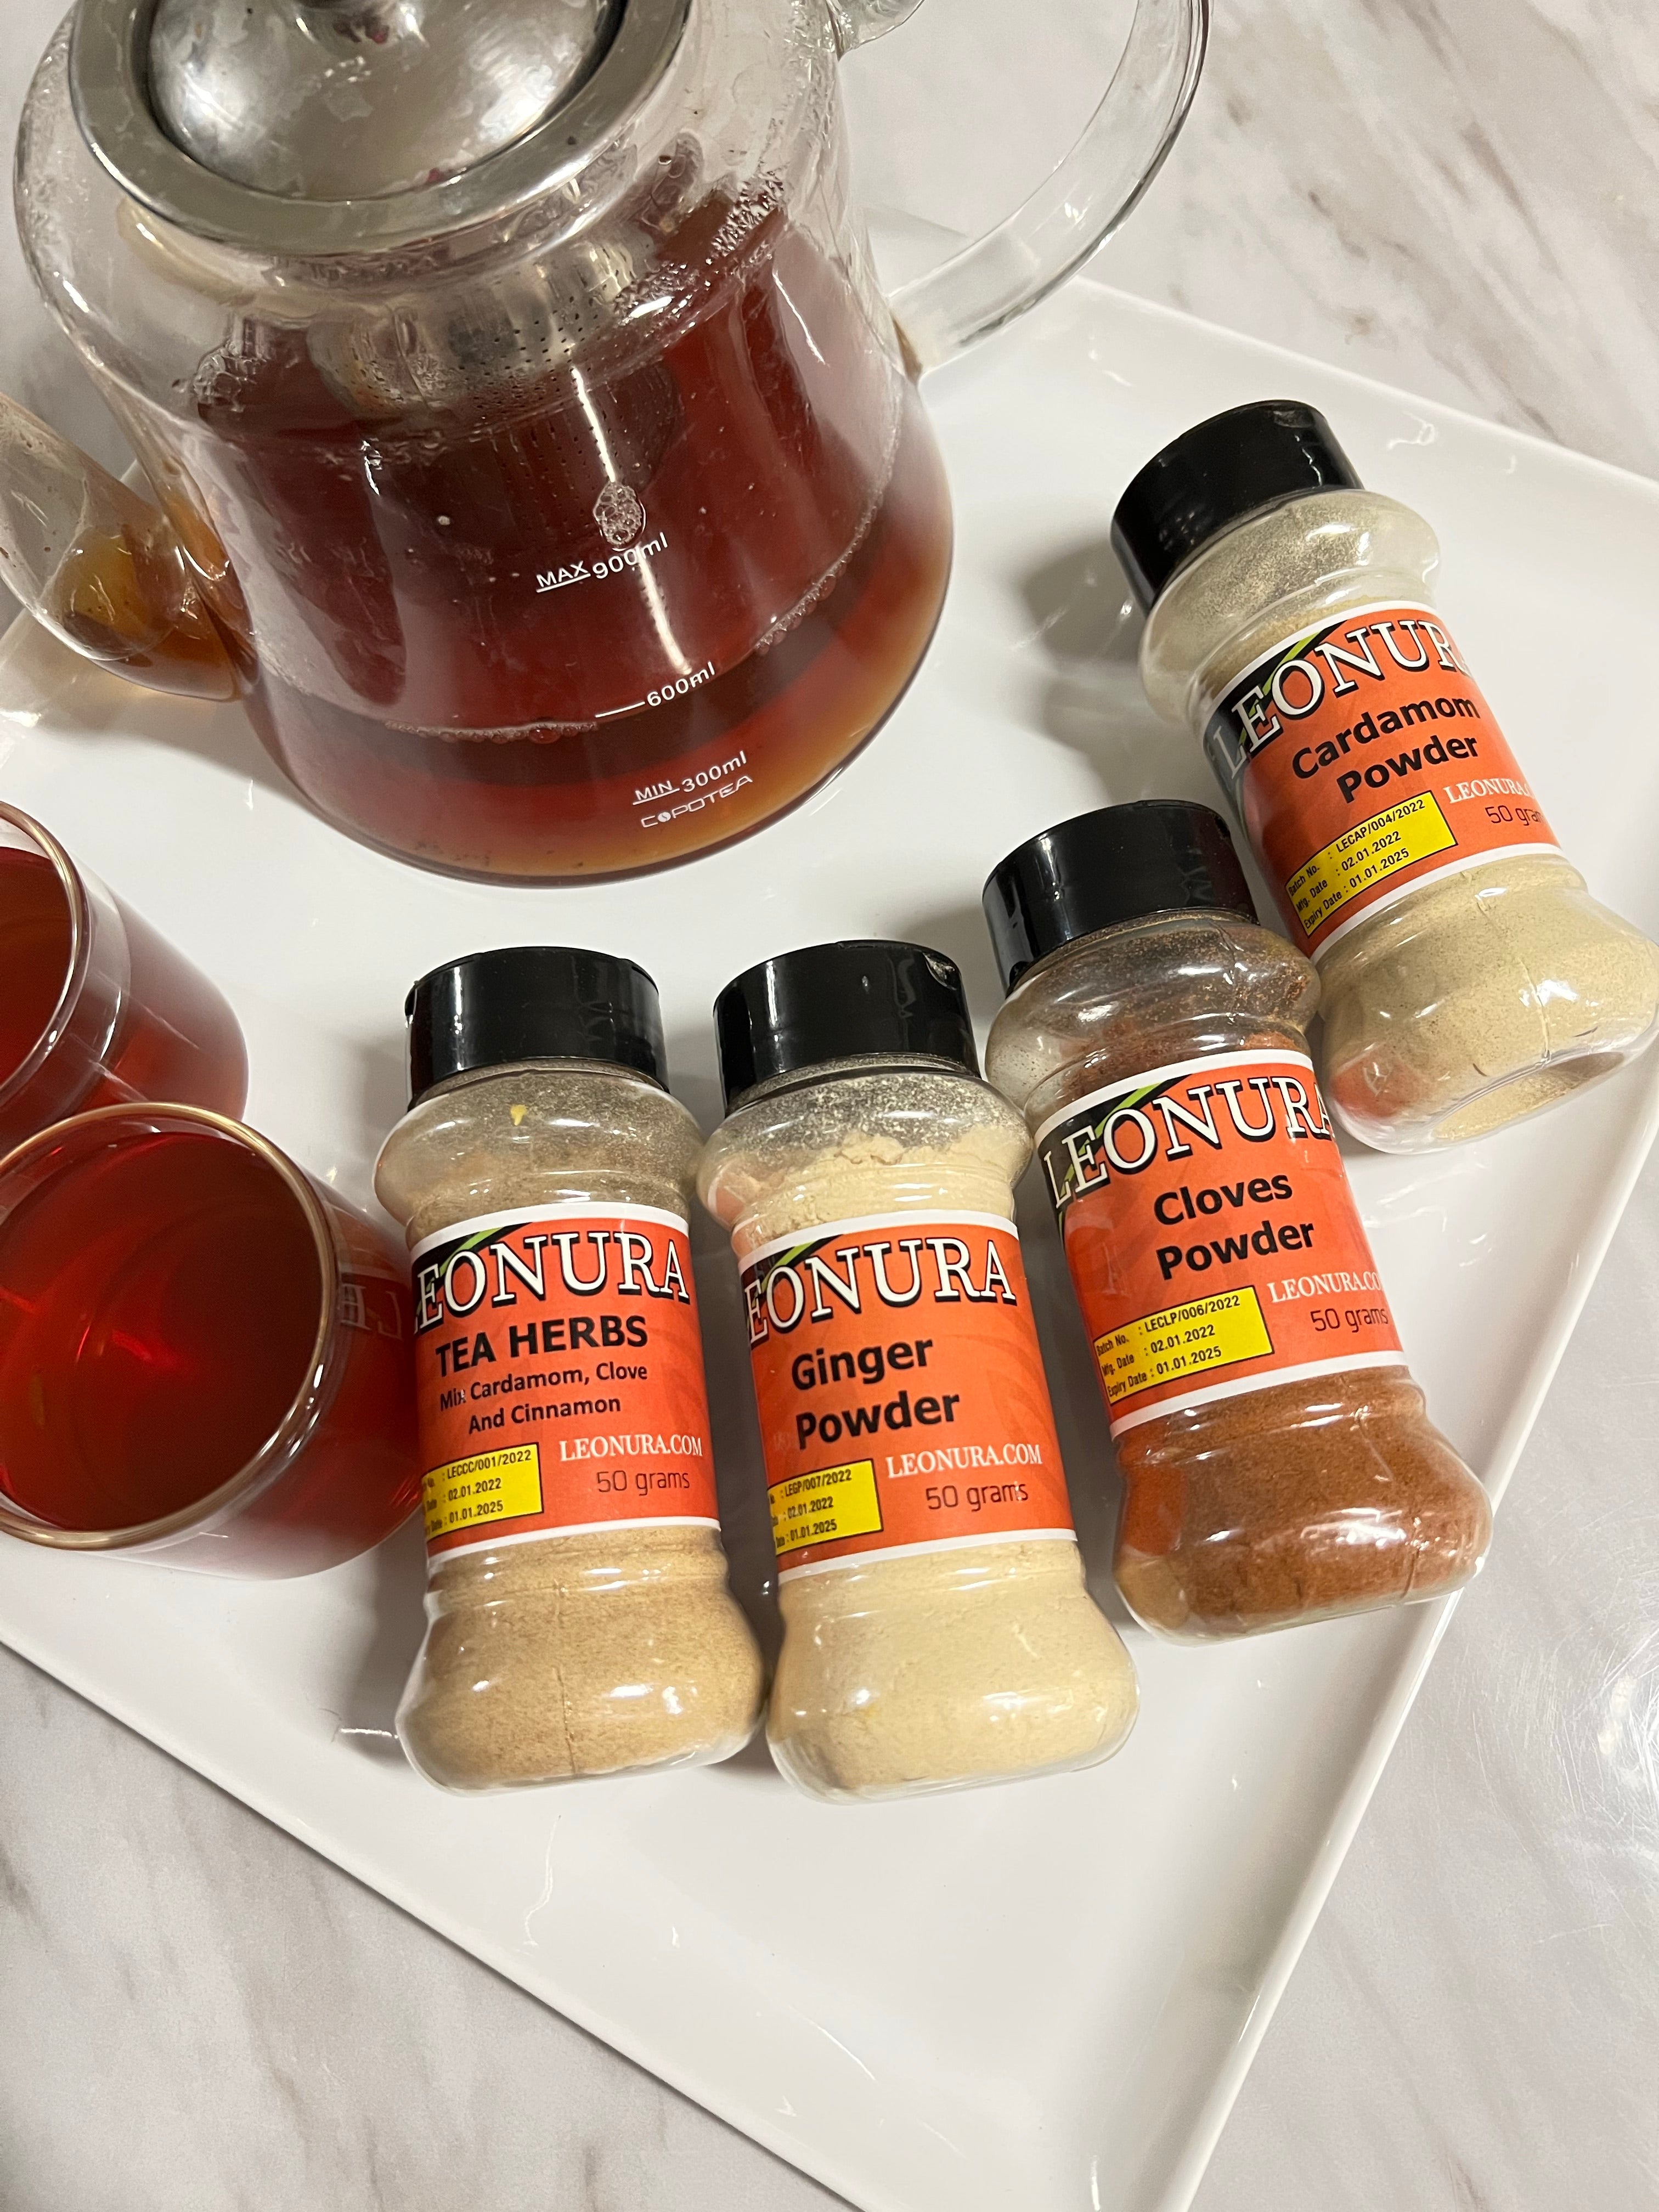 Leonura bundle spices